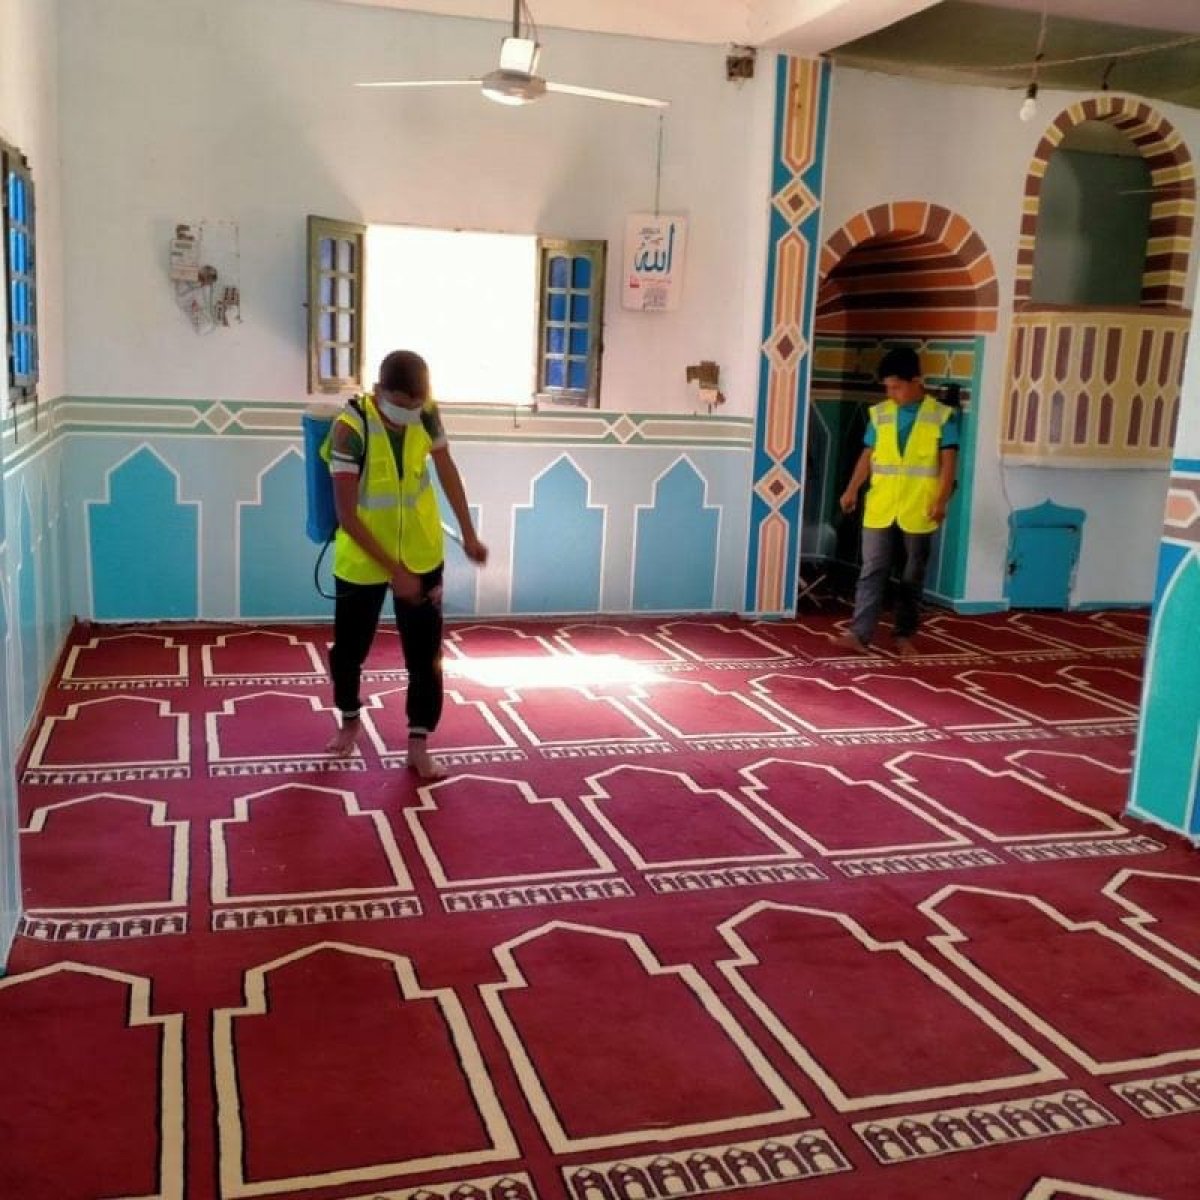 بالصور: الأوقاف تواصل حملتها الموسعة لنظافة وتعقيم المساجد خلال شهر رمضان على مستوى الجمهورية